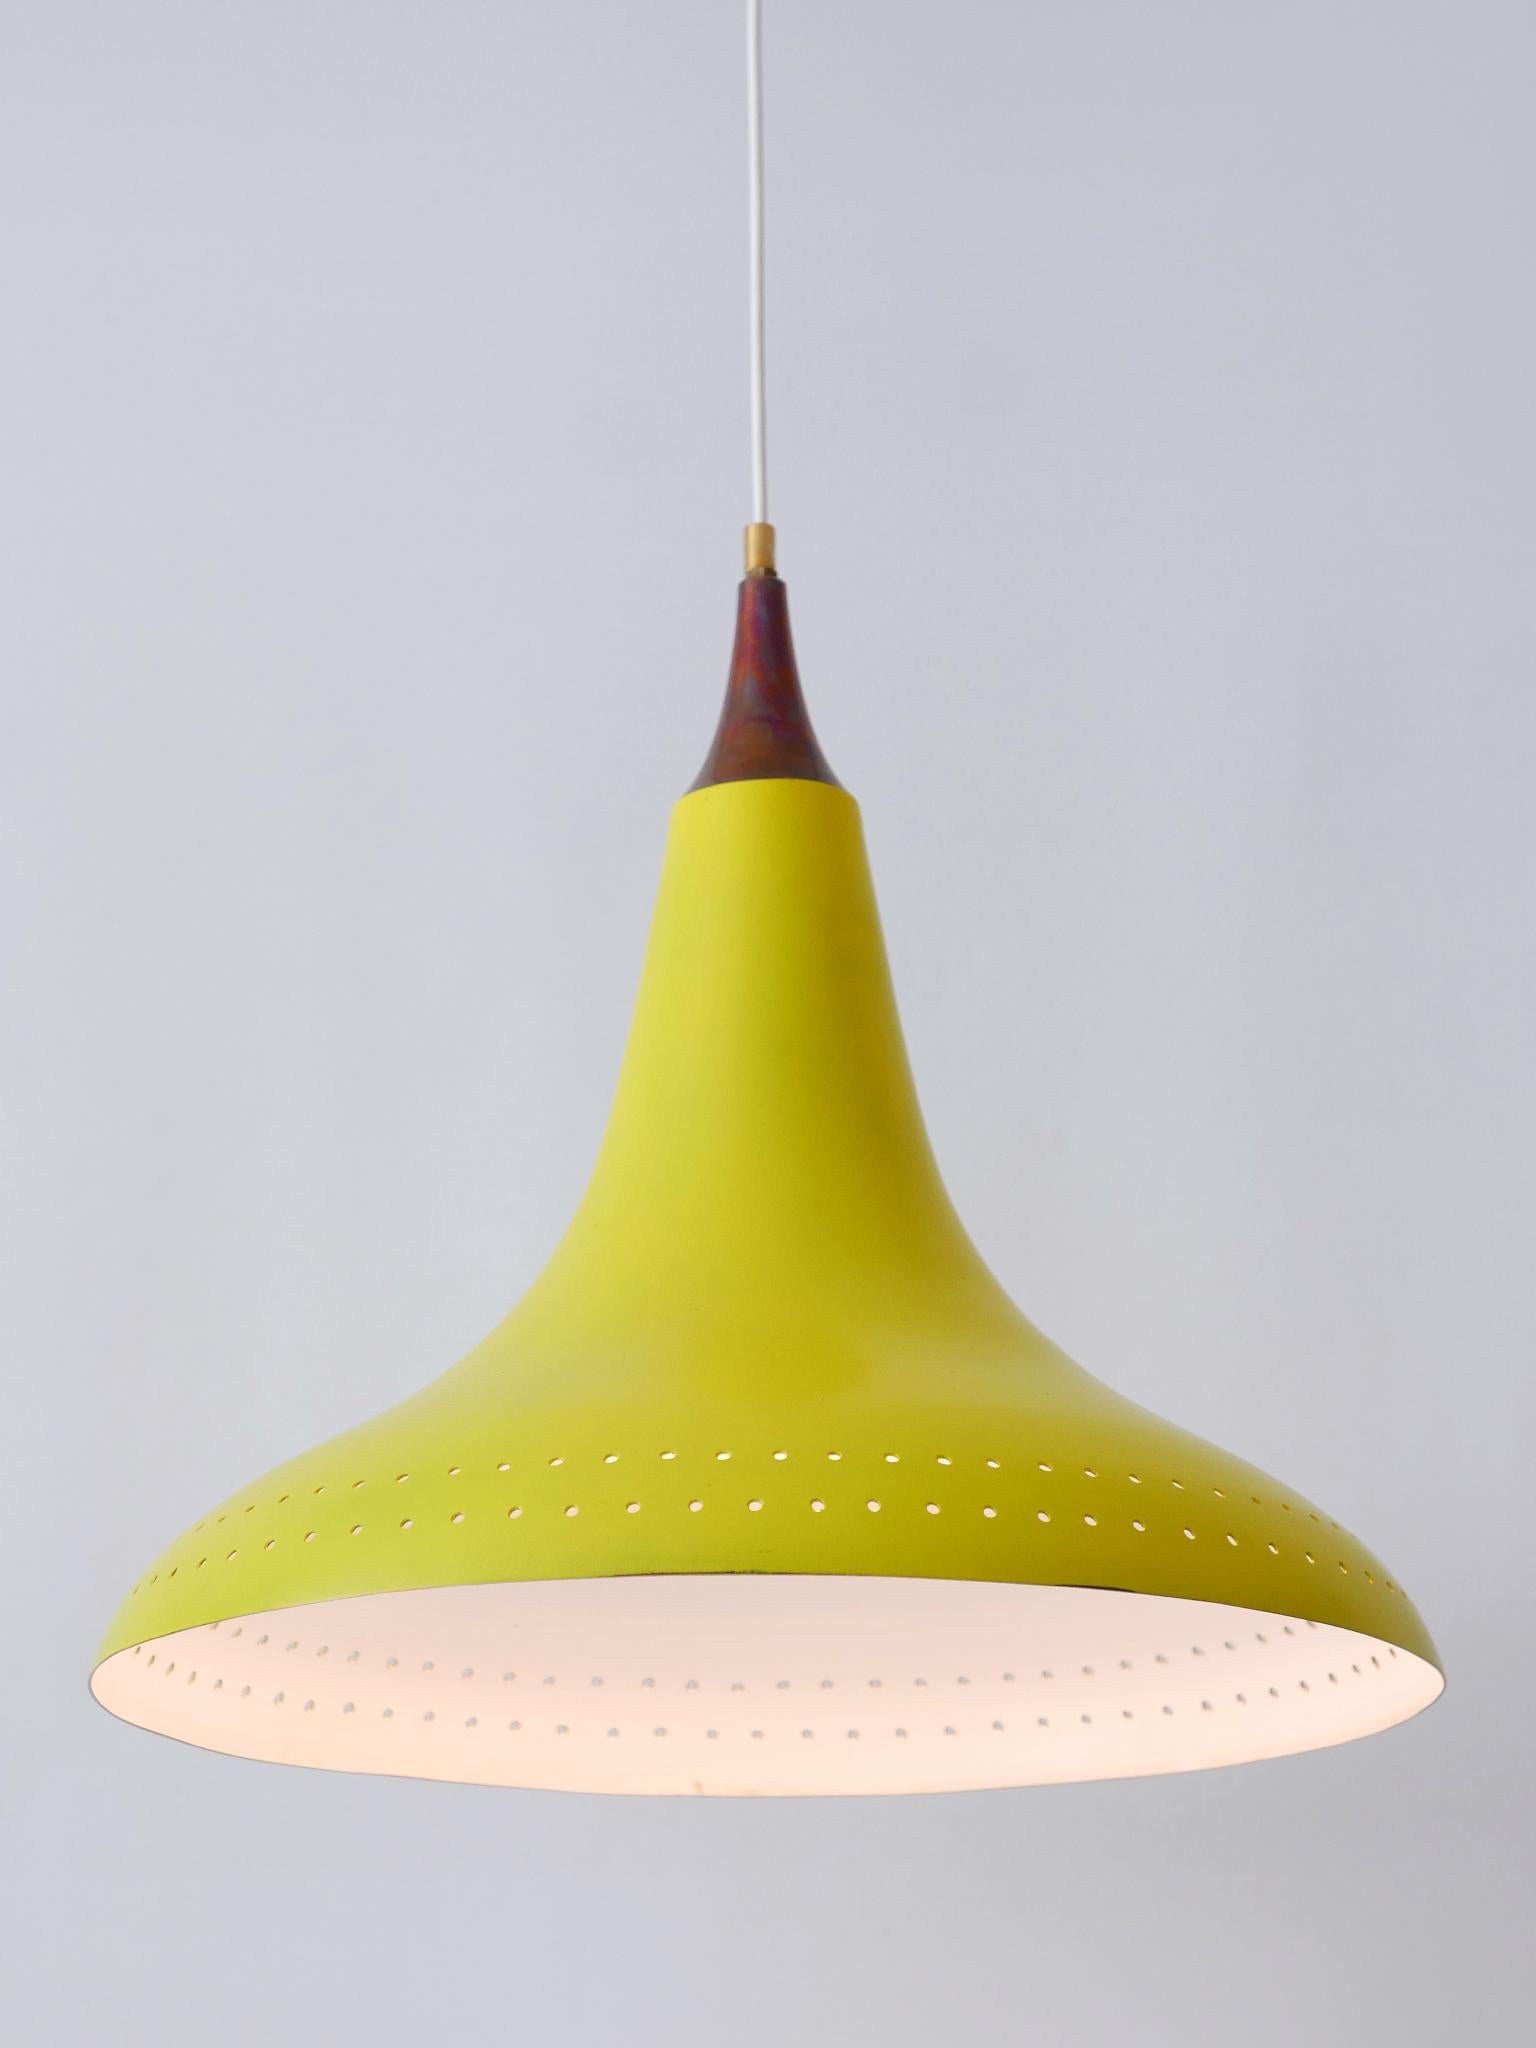 Exceptional Mid-Century Modern Perforated Aluminium Pendant Lamp Austria 1960s For Sale 4